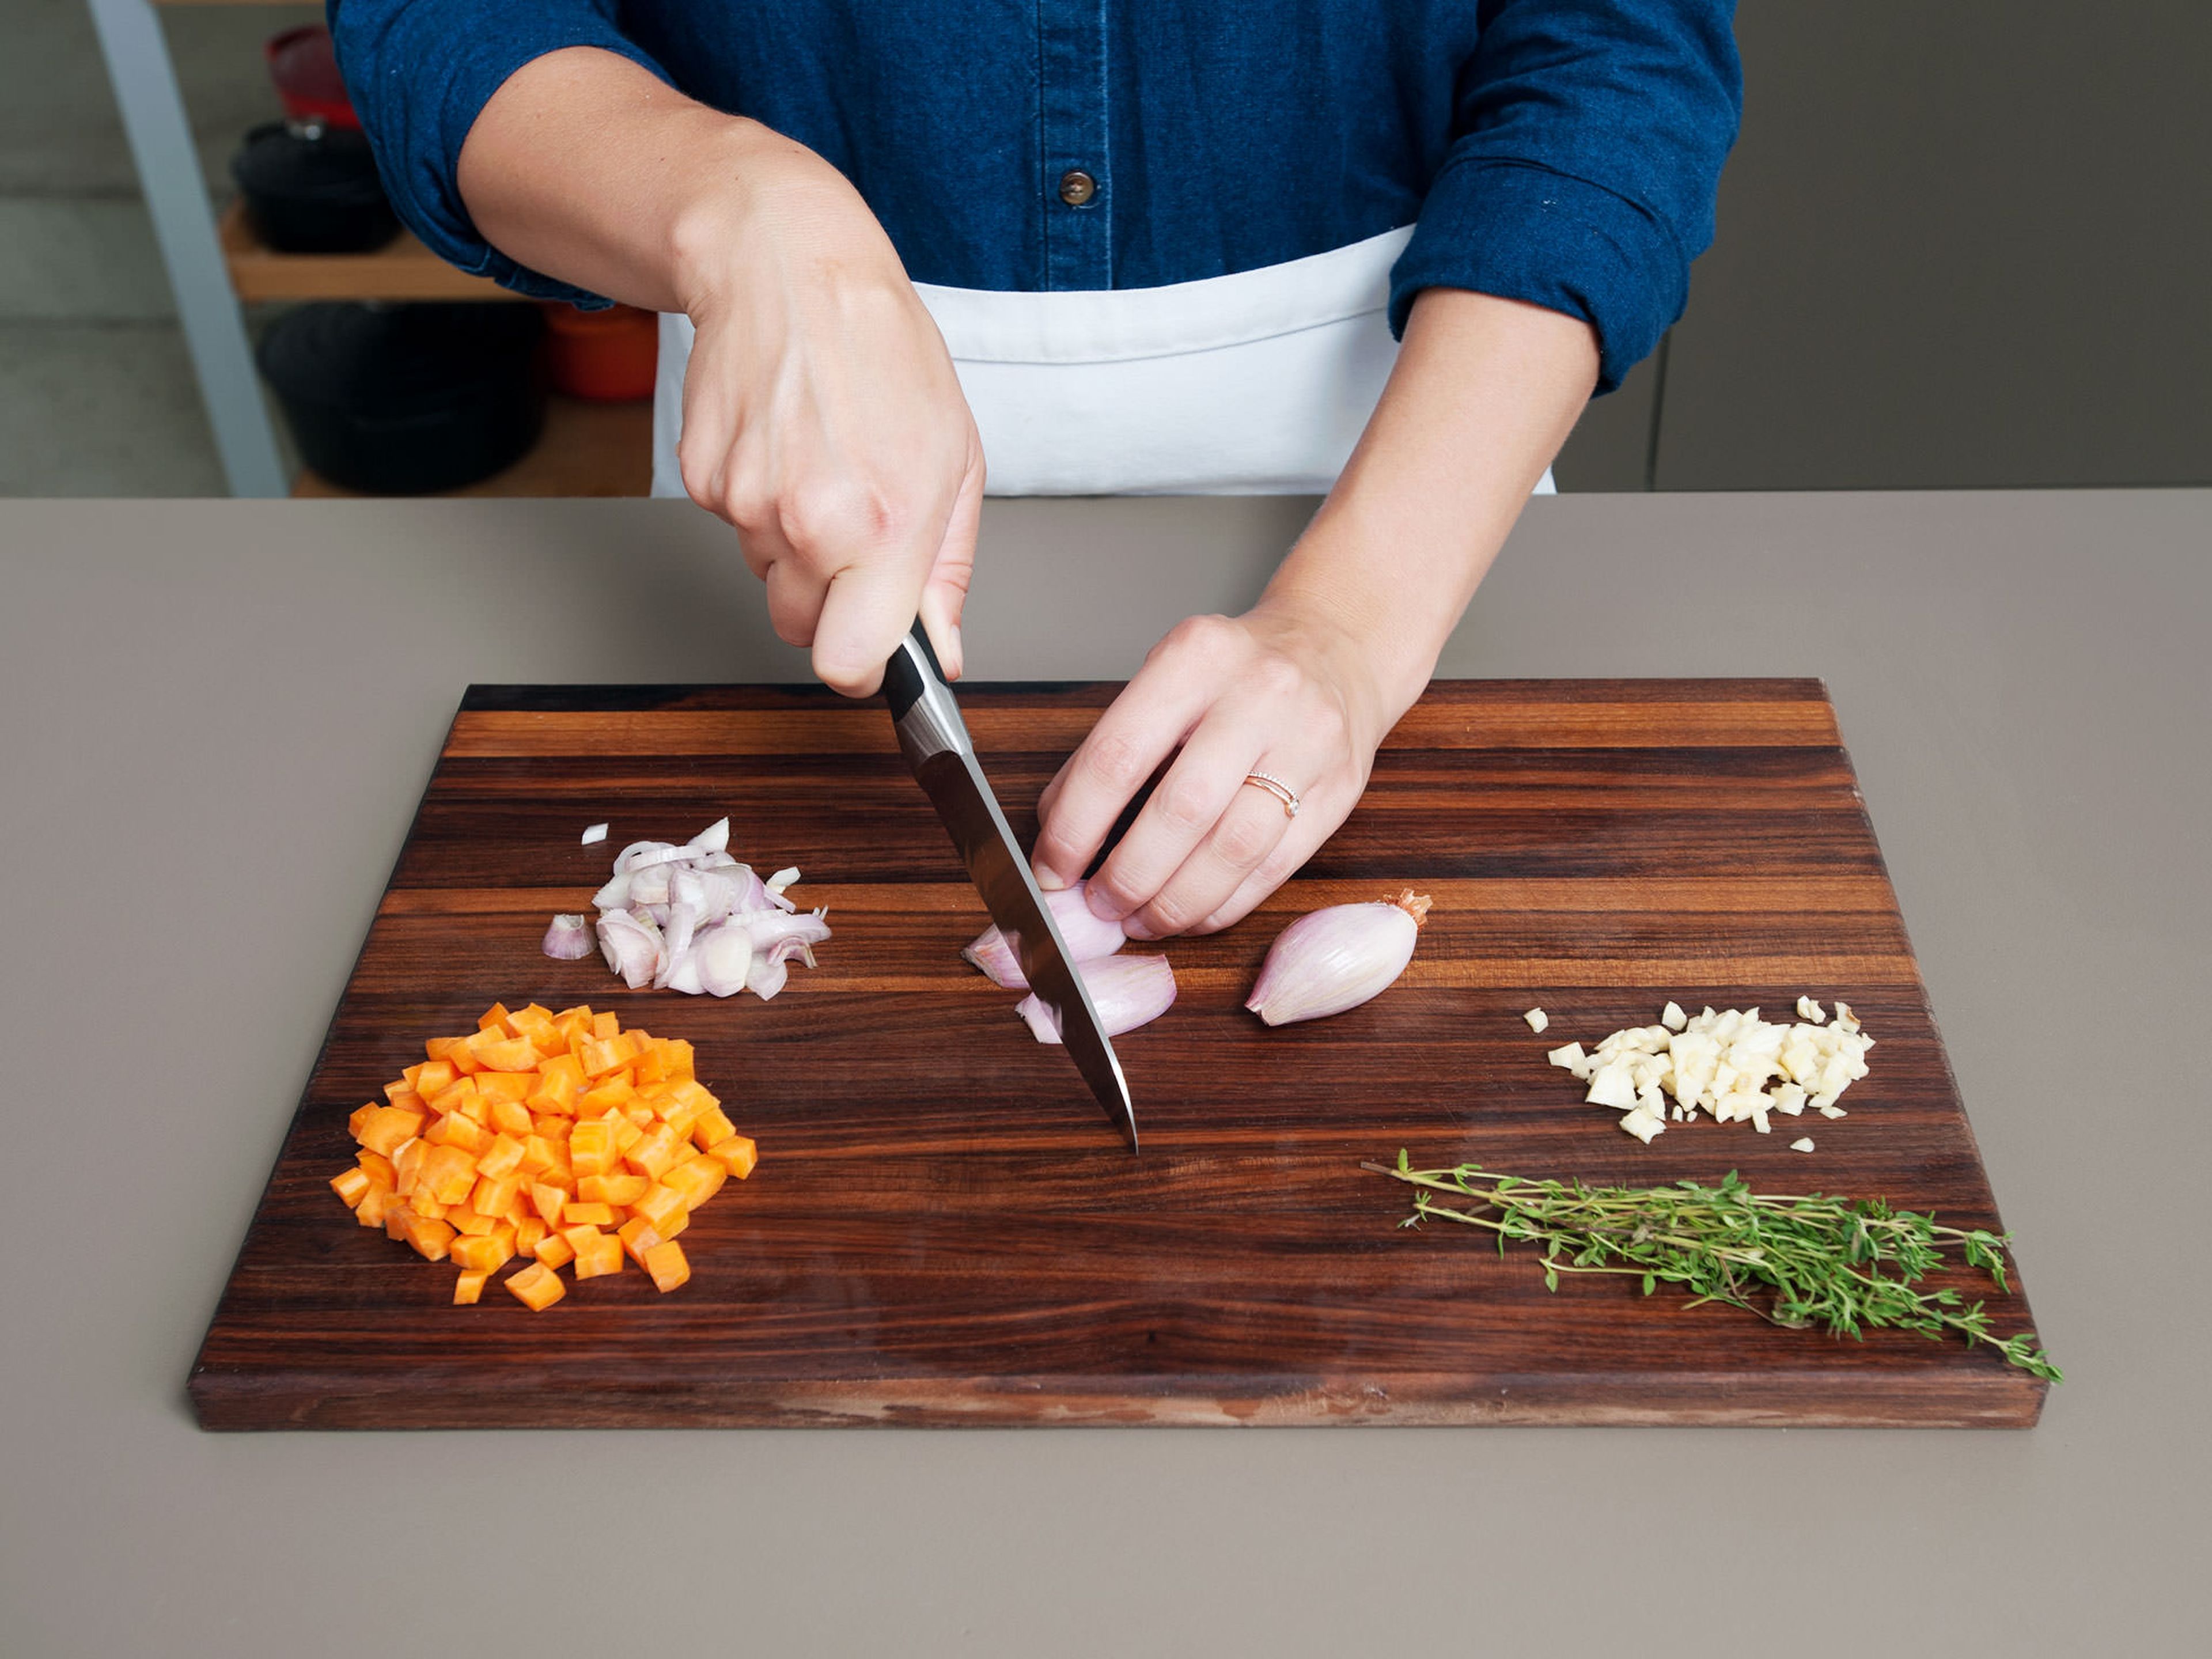 Karotte in kleine Würfel schneiden, Knoblauch hacken und Schalotten in feine Scheiben schneiden.